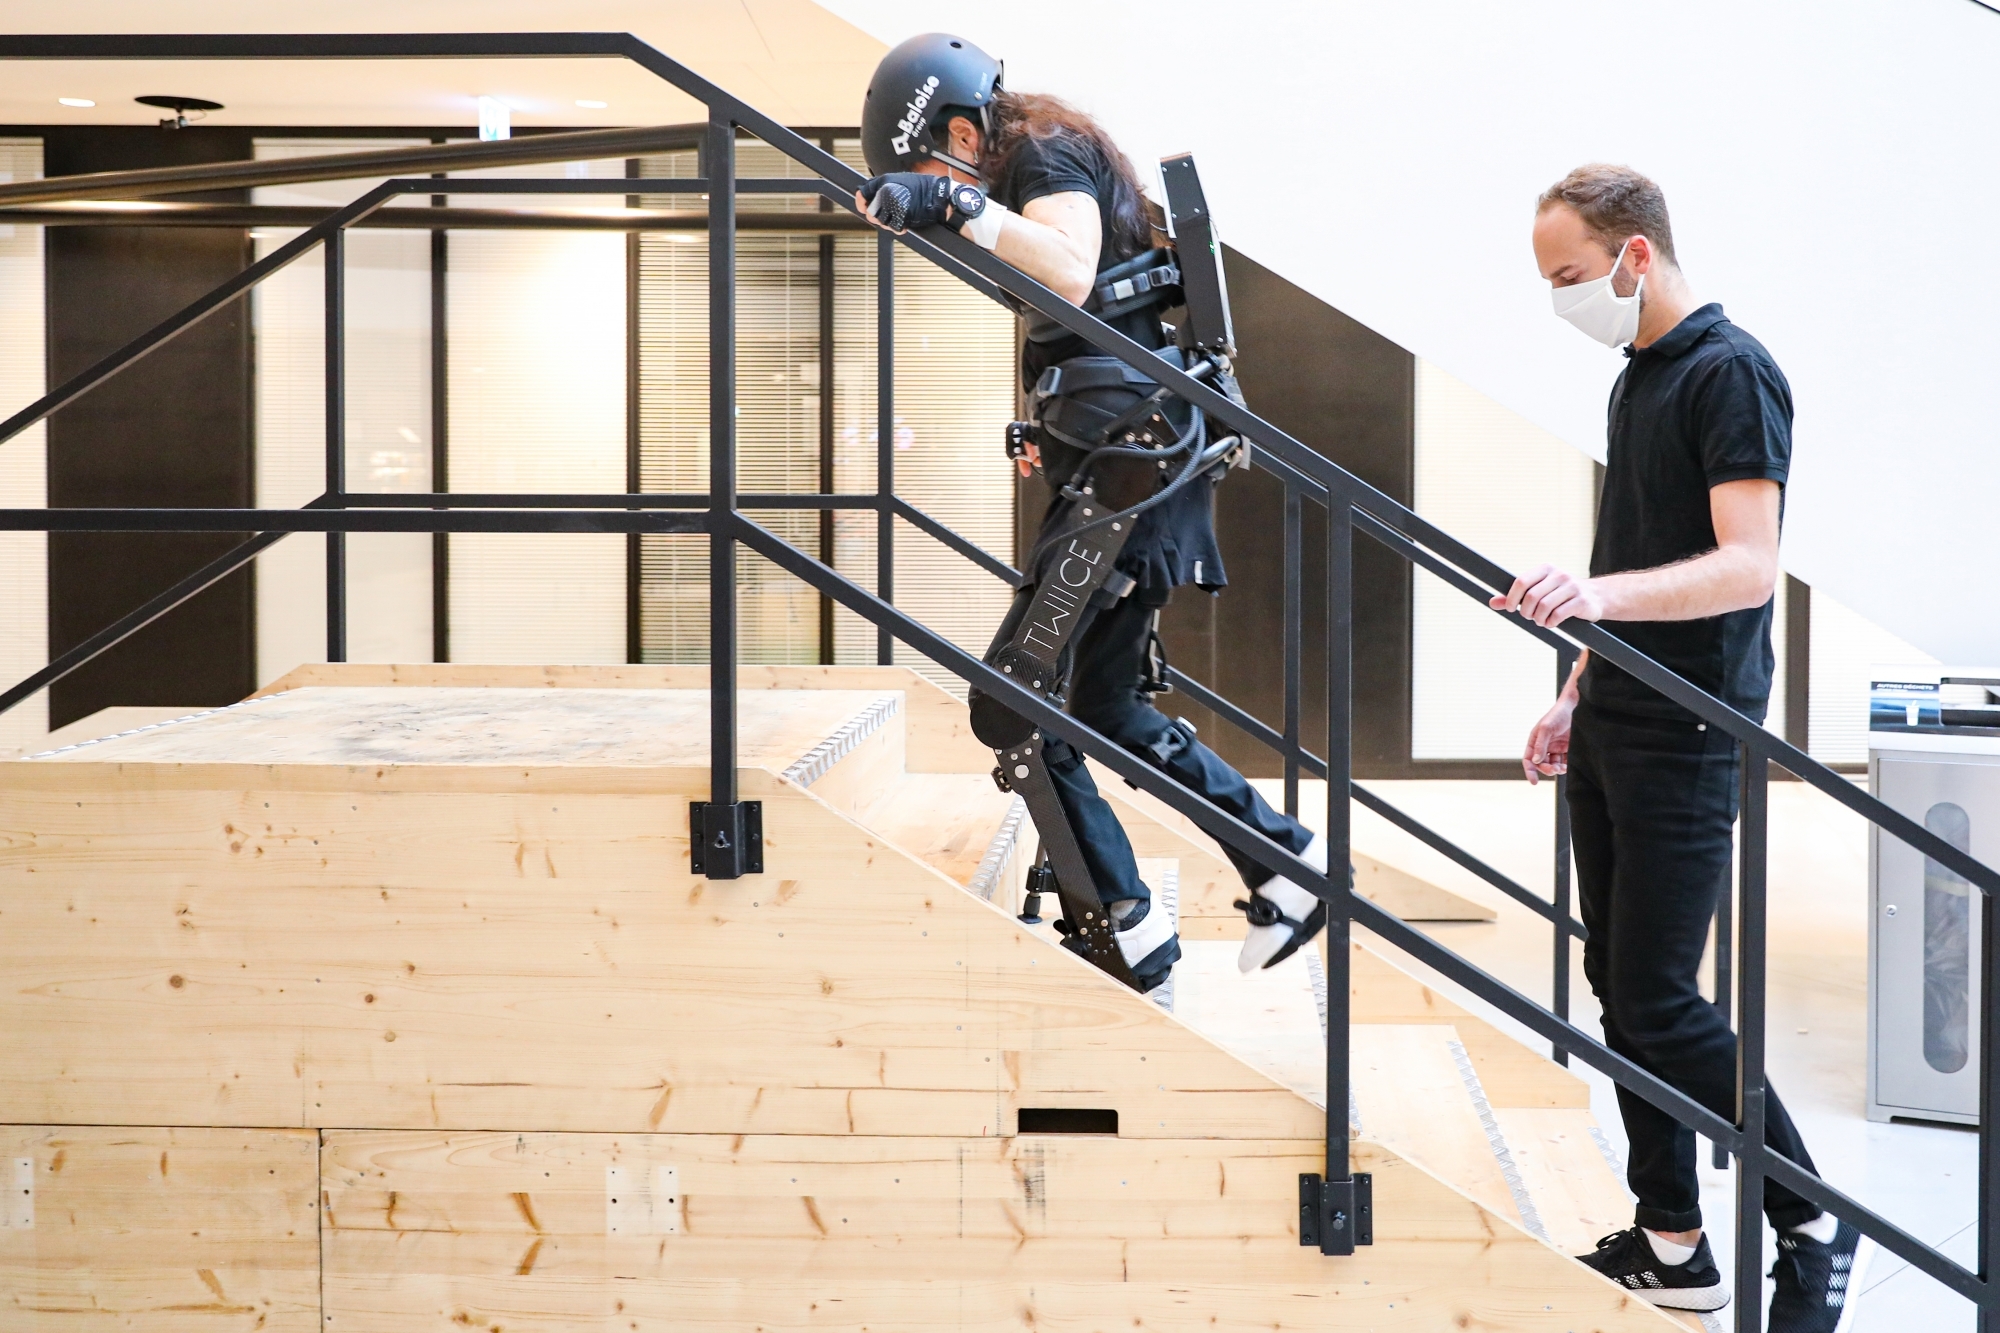 L’entreprise Sonceboz SA s’est installée au cœur du campus de l’EPFL pour développer des projets de recherche. Parmi les plus avancés figure l’exosquelette TWIICE qui permet aux paraplégiques de se lever et de marcher.